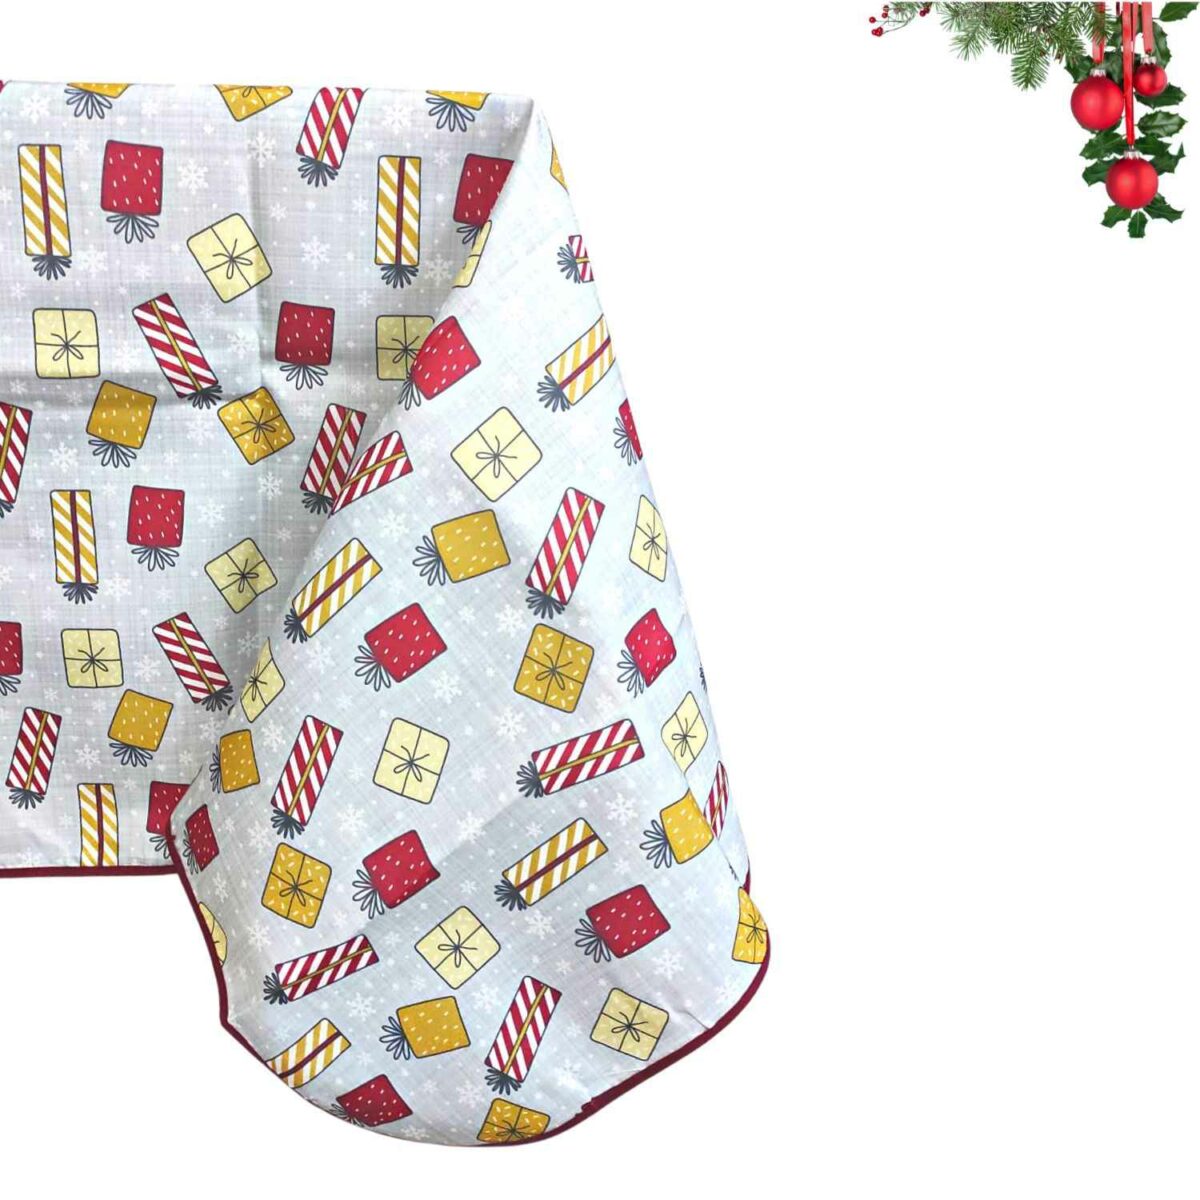 pacchi-tovaglia-antimacchia-natalizia-idrorepellente-no-stiro-grigio-rosso-giallo-pacchi-regalo-dettaglio